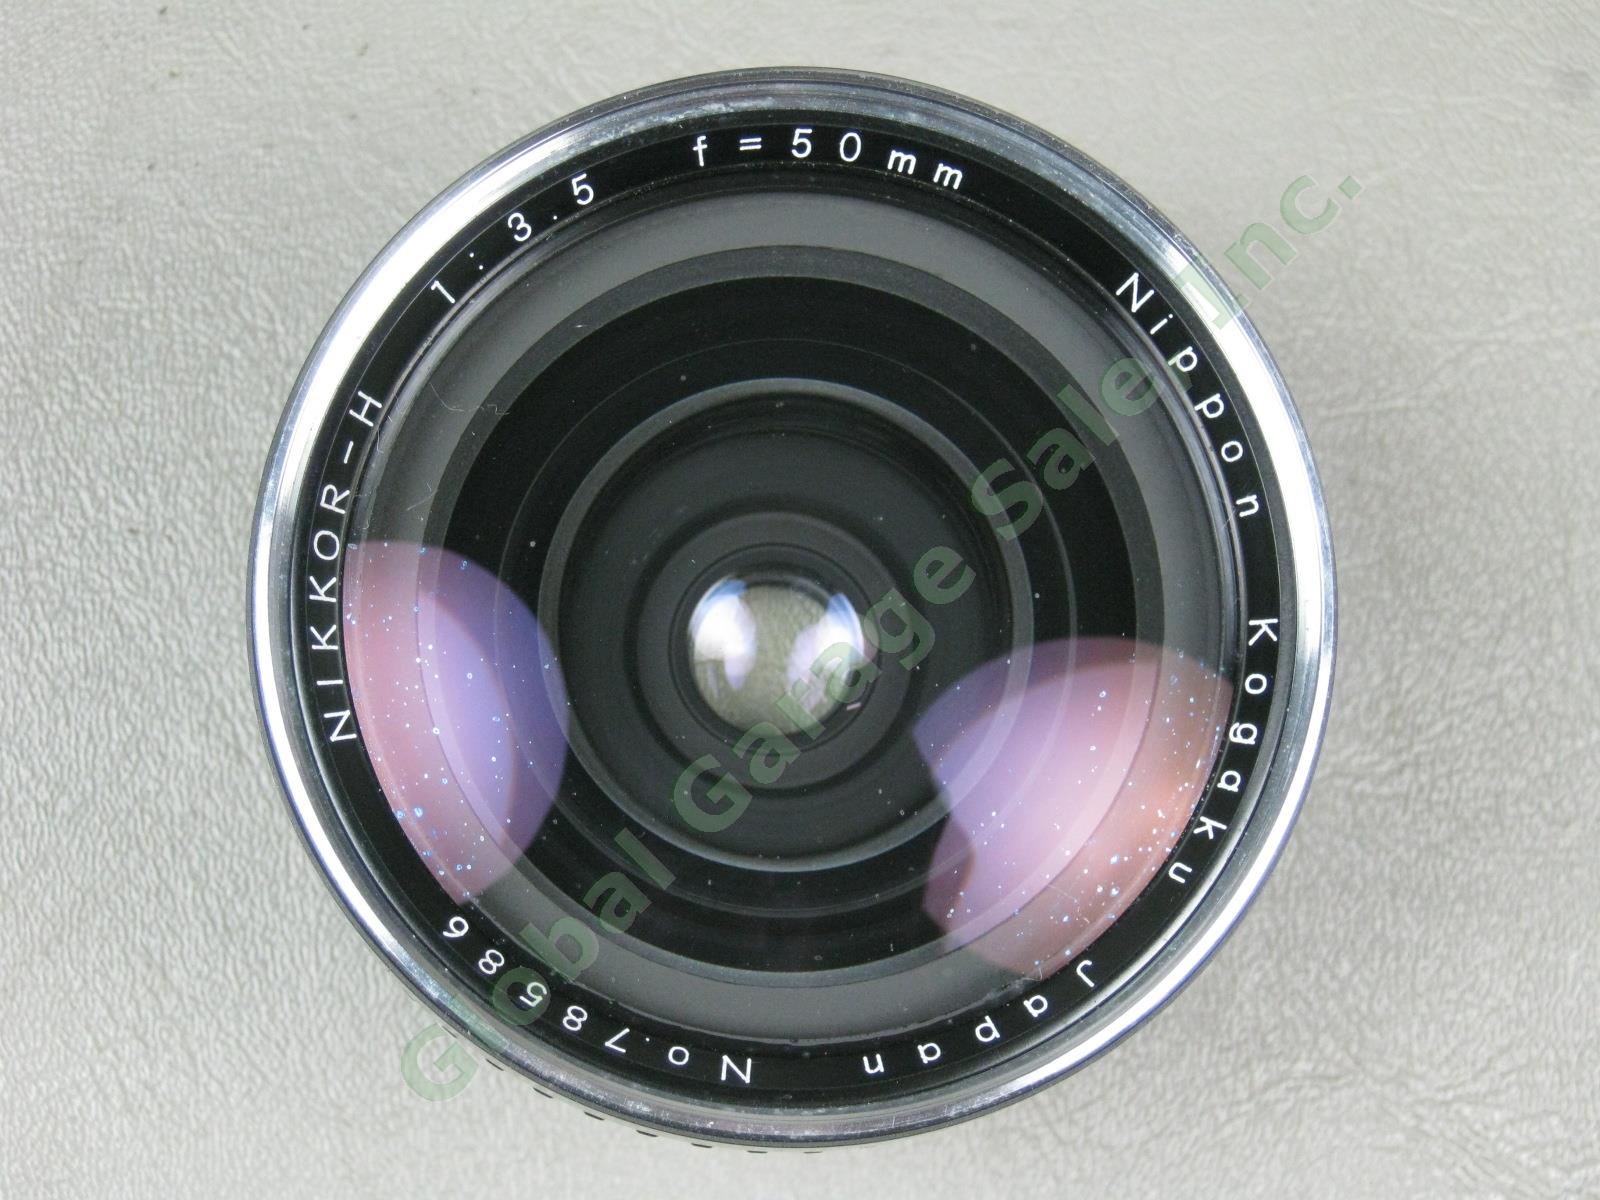 Zenza Bronica EC-TL Camera Nippon Kogaku Nikkor-H 50mm 1:3.5 f/3.5 Lens Bundle 10